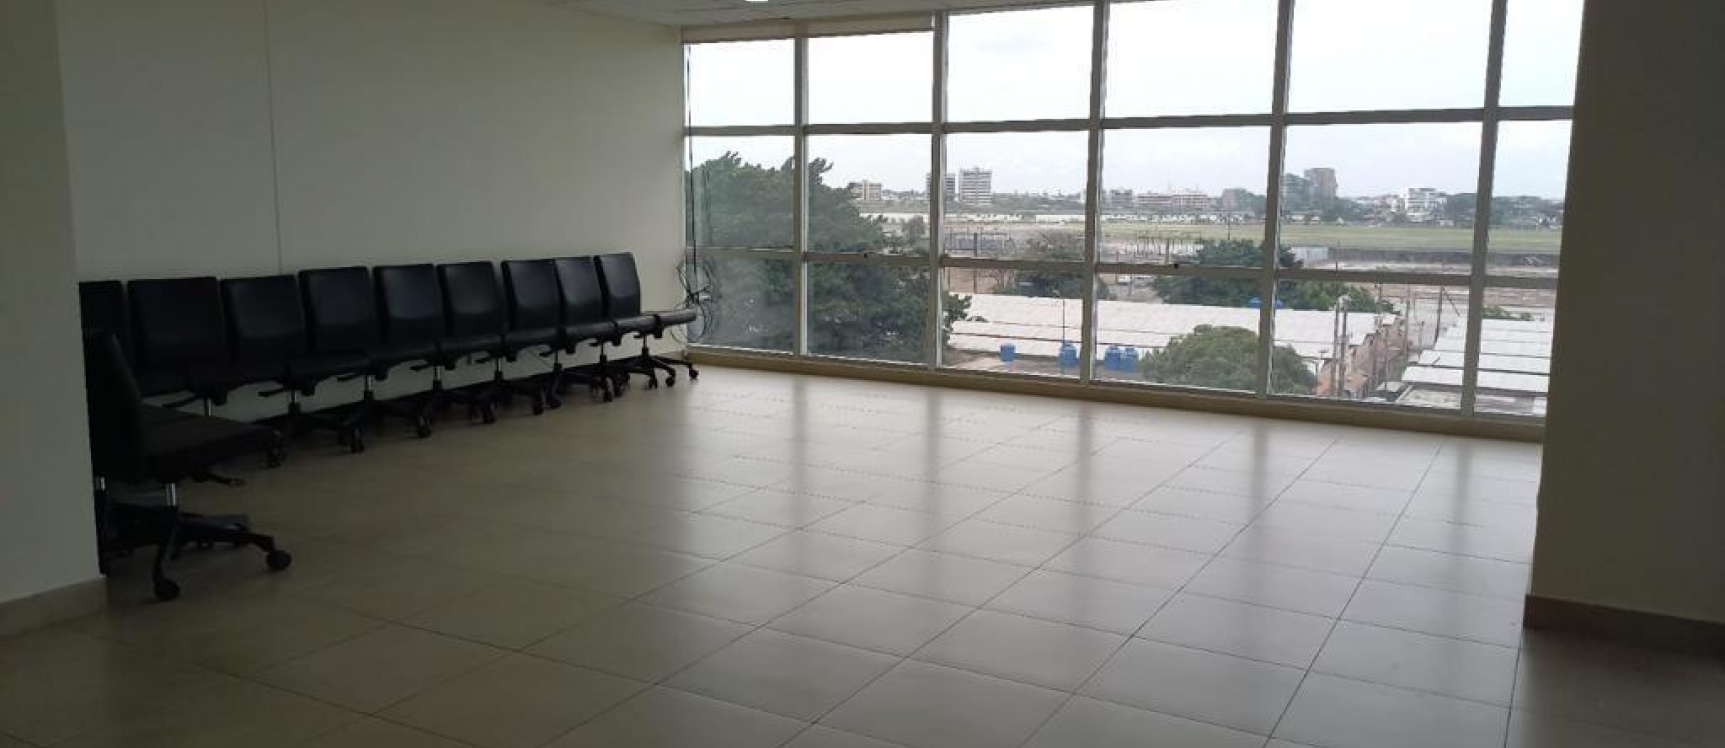 GeoBienes - Oficina en alquiler ubicada en el Edificio Sky Building, Norte de Guayaquil - Plusvalia Guayaquil Casas de venta y alquiler Inmobiliaria Ecuador